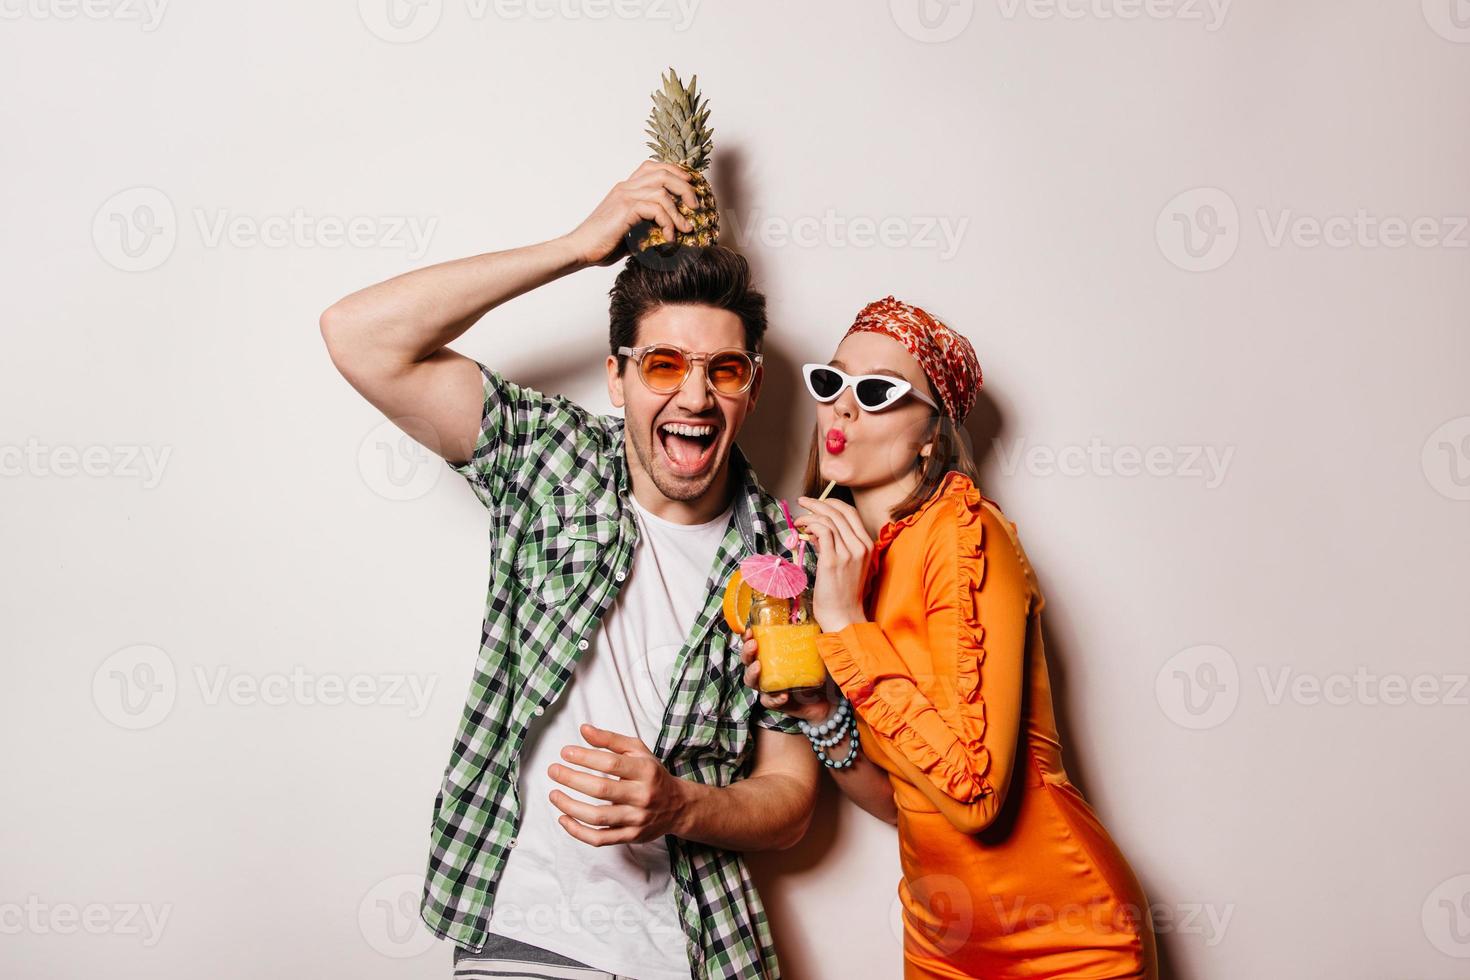 Mann mit orangefarbener Brille hält Ananas auf dem Kopf und lacht. Frau in hellem Kleid und Sonnenbrille foto